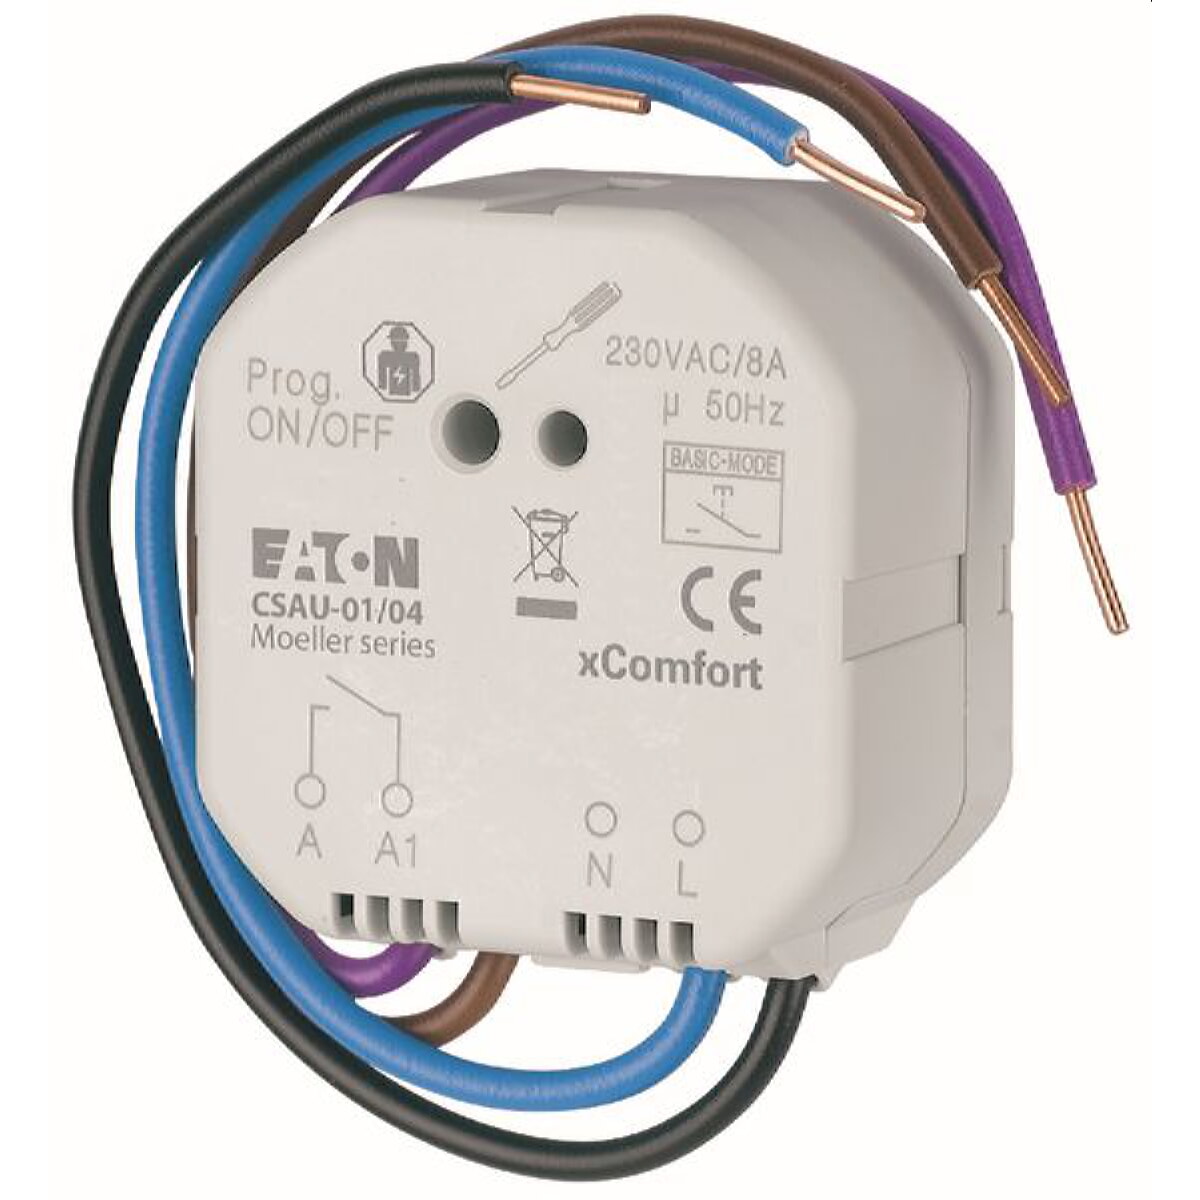 EATON Electric switching actuator CSAU-01/04 1gang